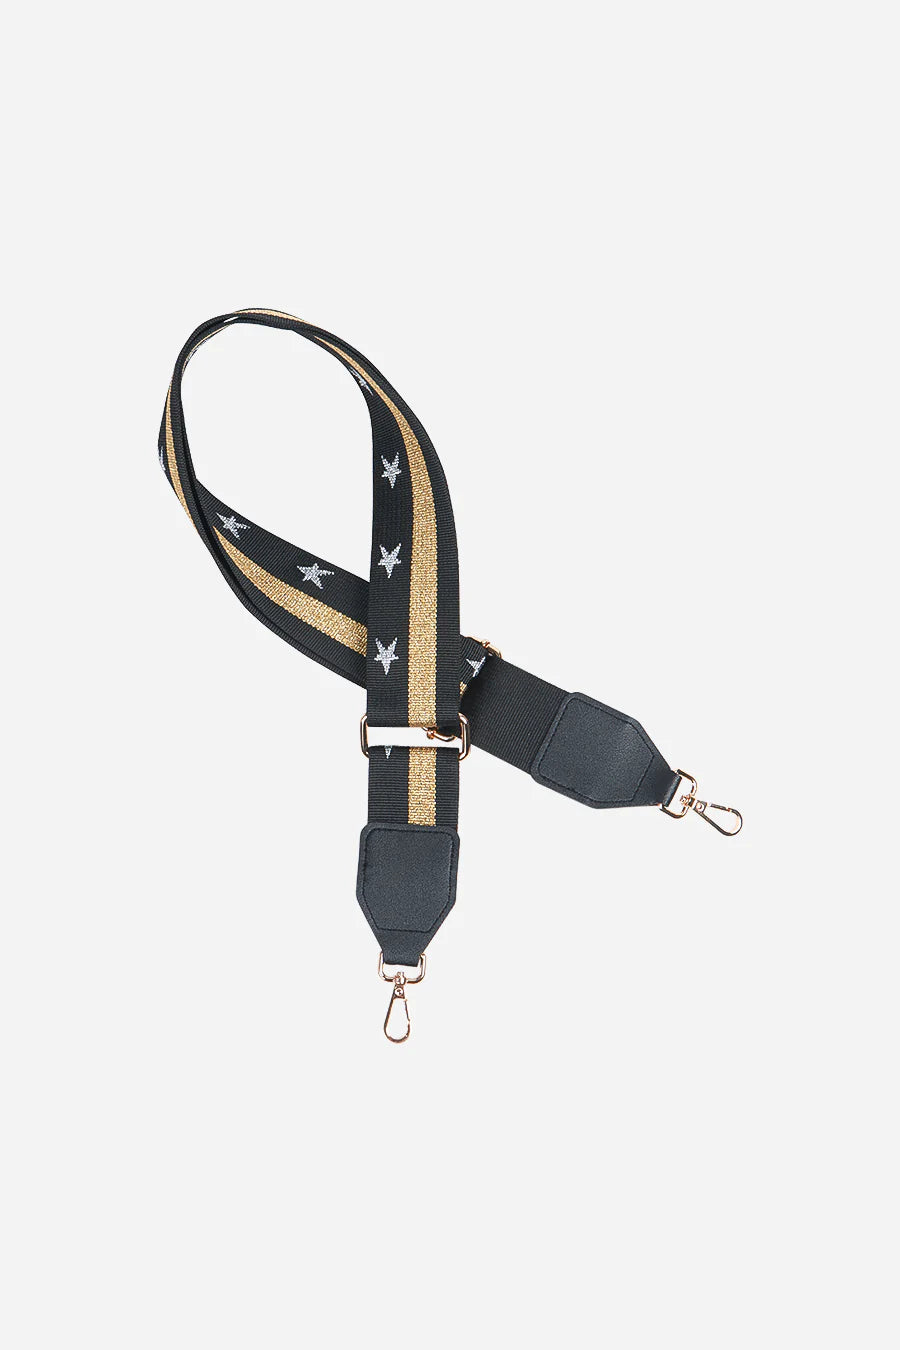 Crossbody Bag Strap in Black Gold Stars &amp; Stripes